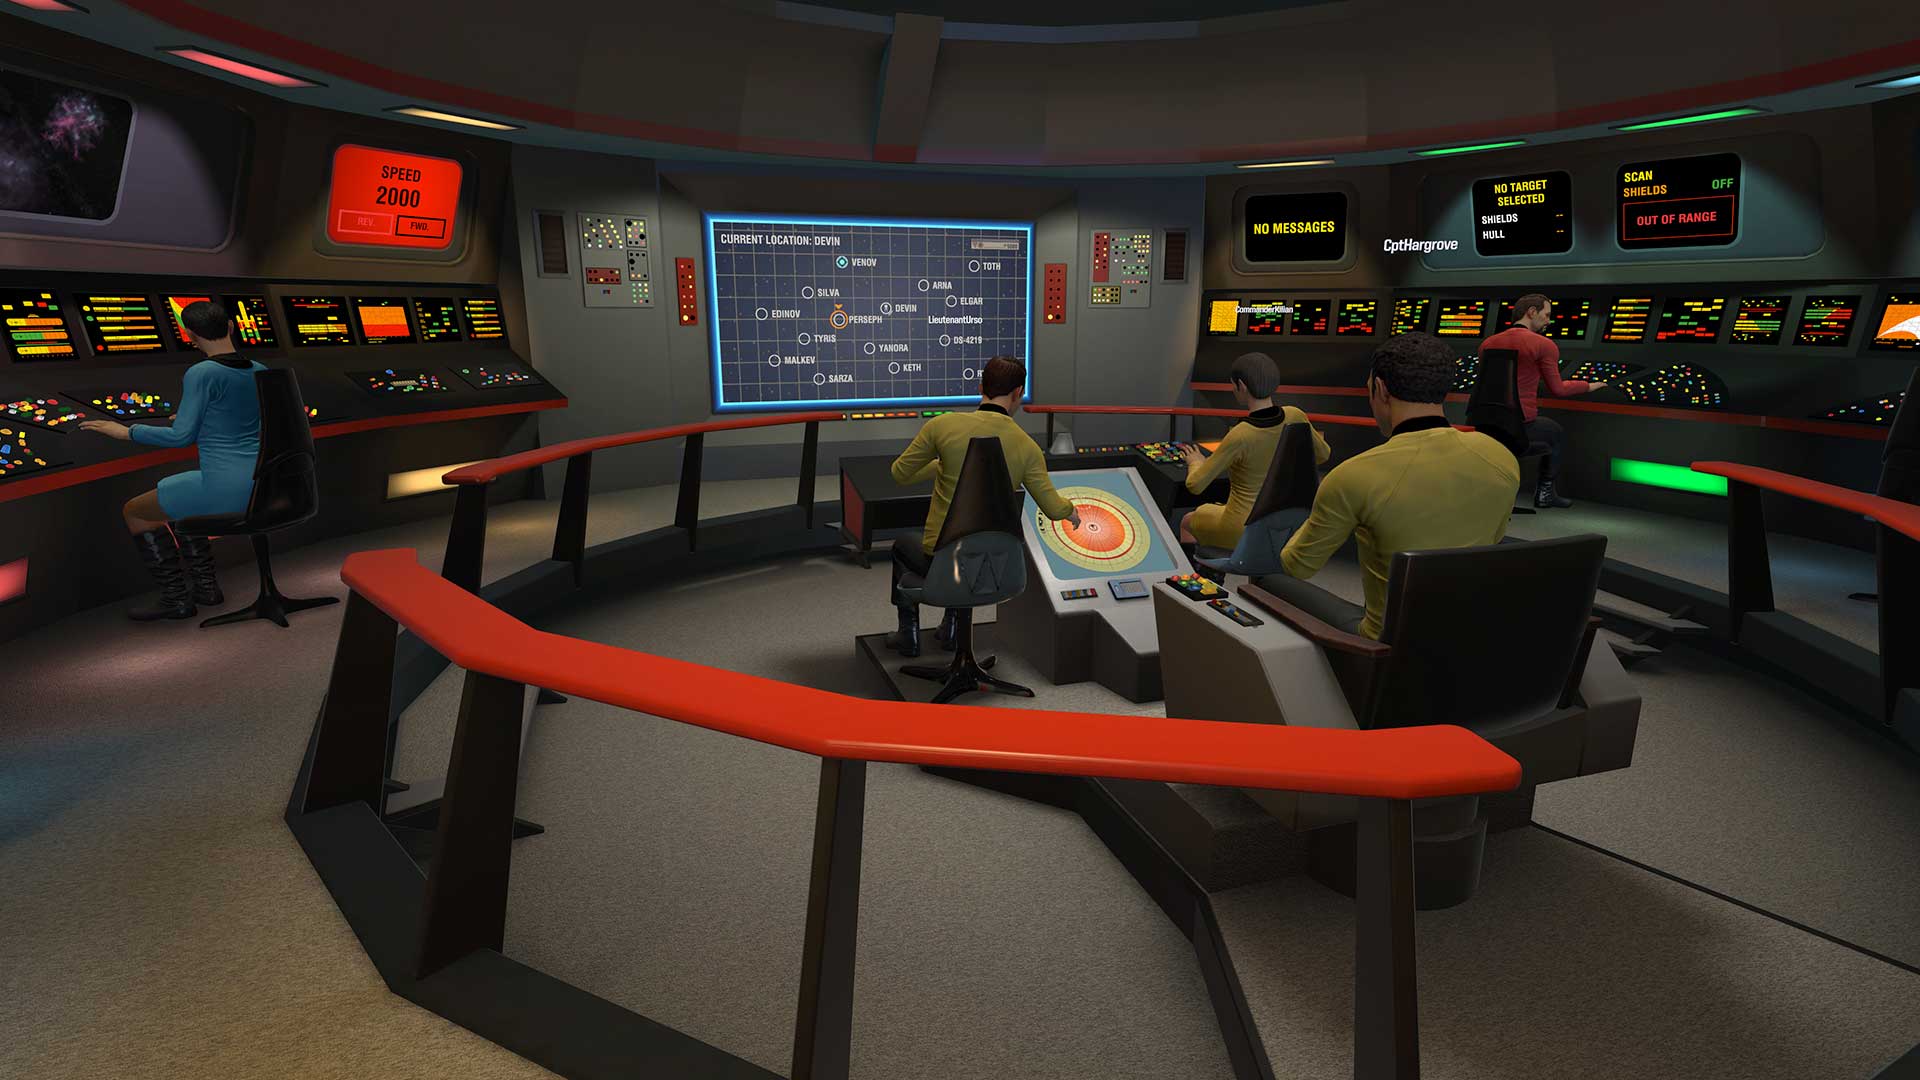 Star Trek™: Bridge Crew